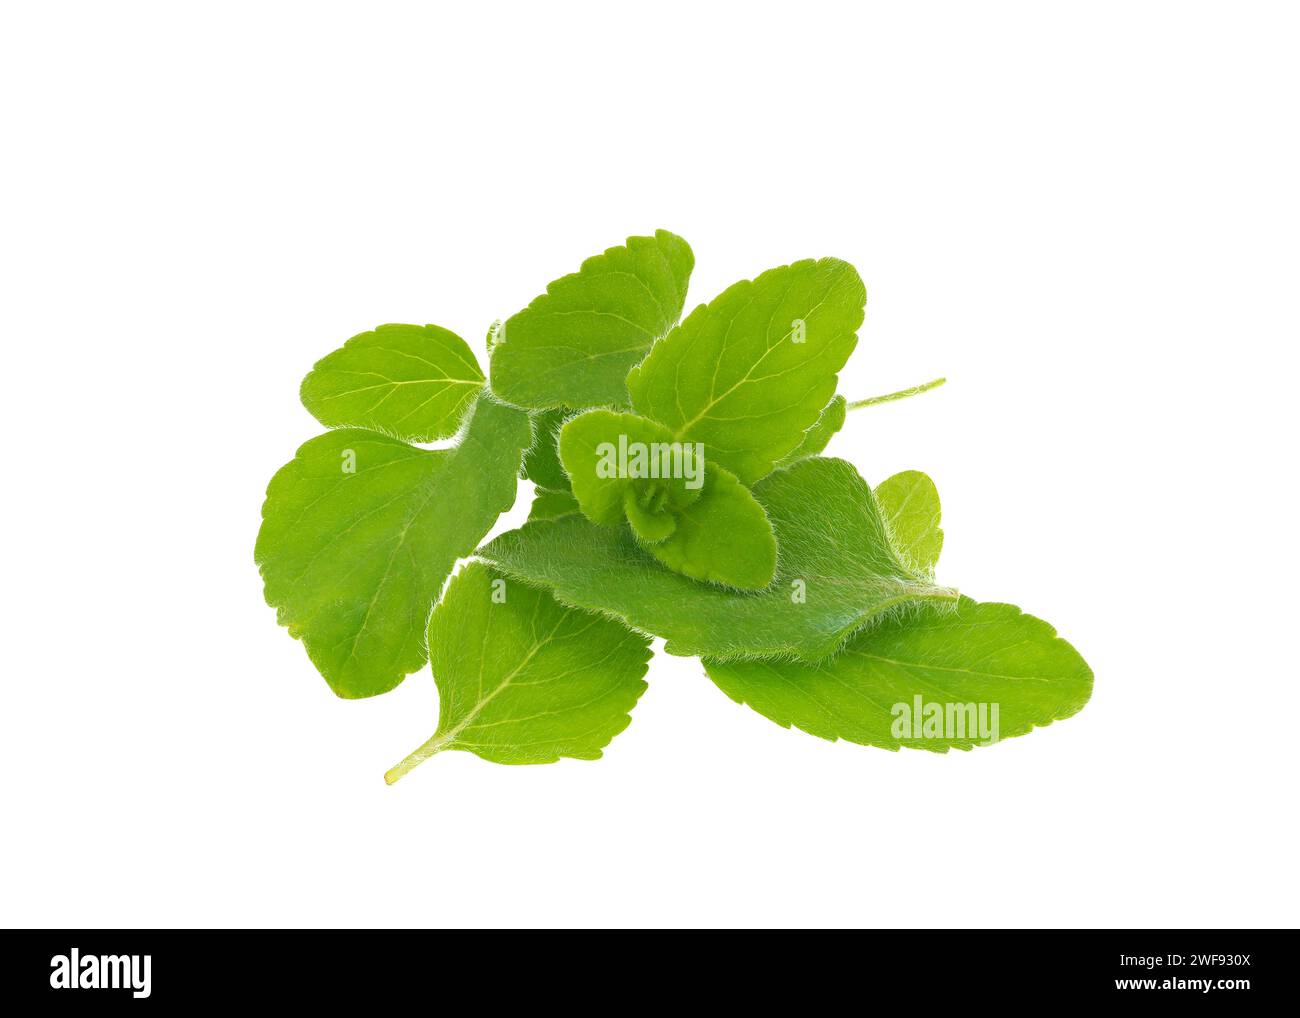 Lesser calamint leaves isolated on white background, Clinopodium nepeta Stock Photo